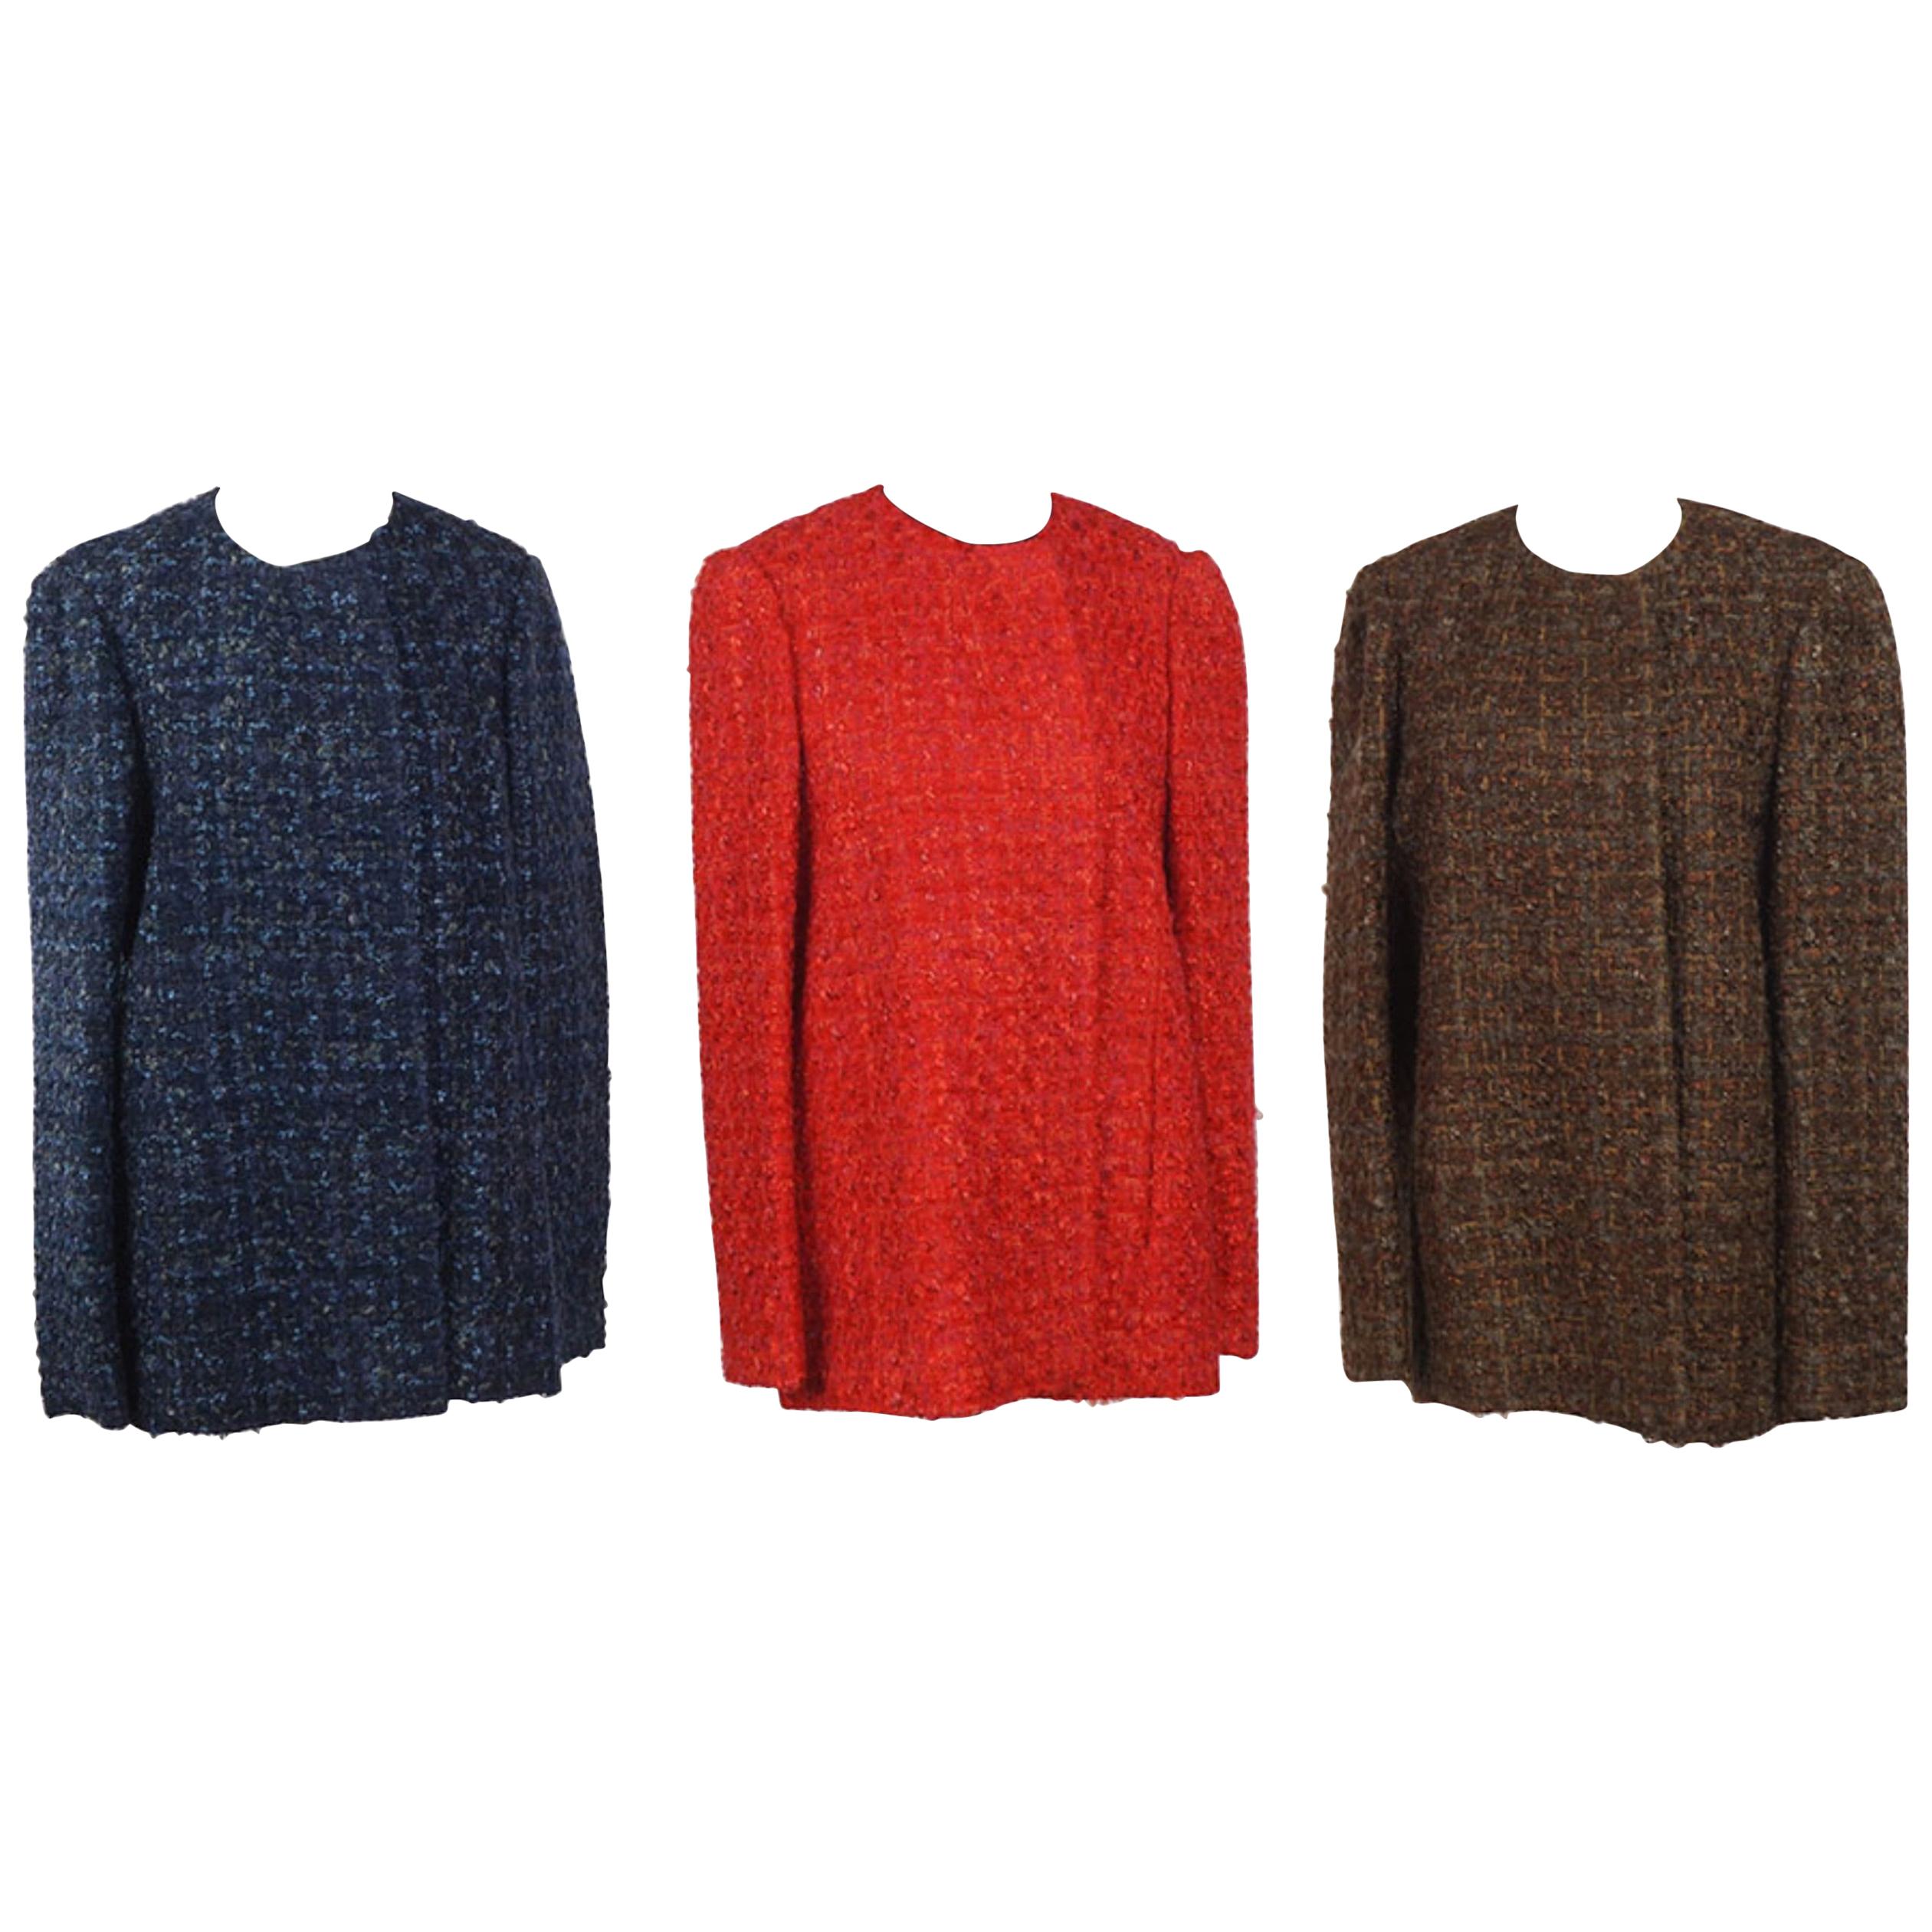 Three Sam Kori Greorge Courture Atelier Boucle Jackets. Approximately size 12-14